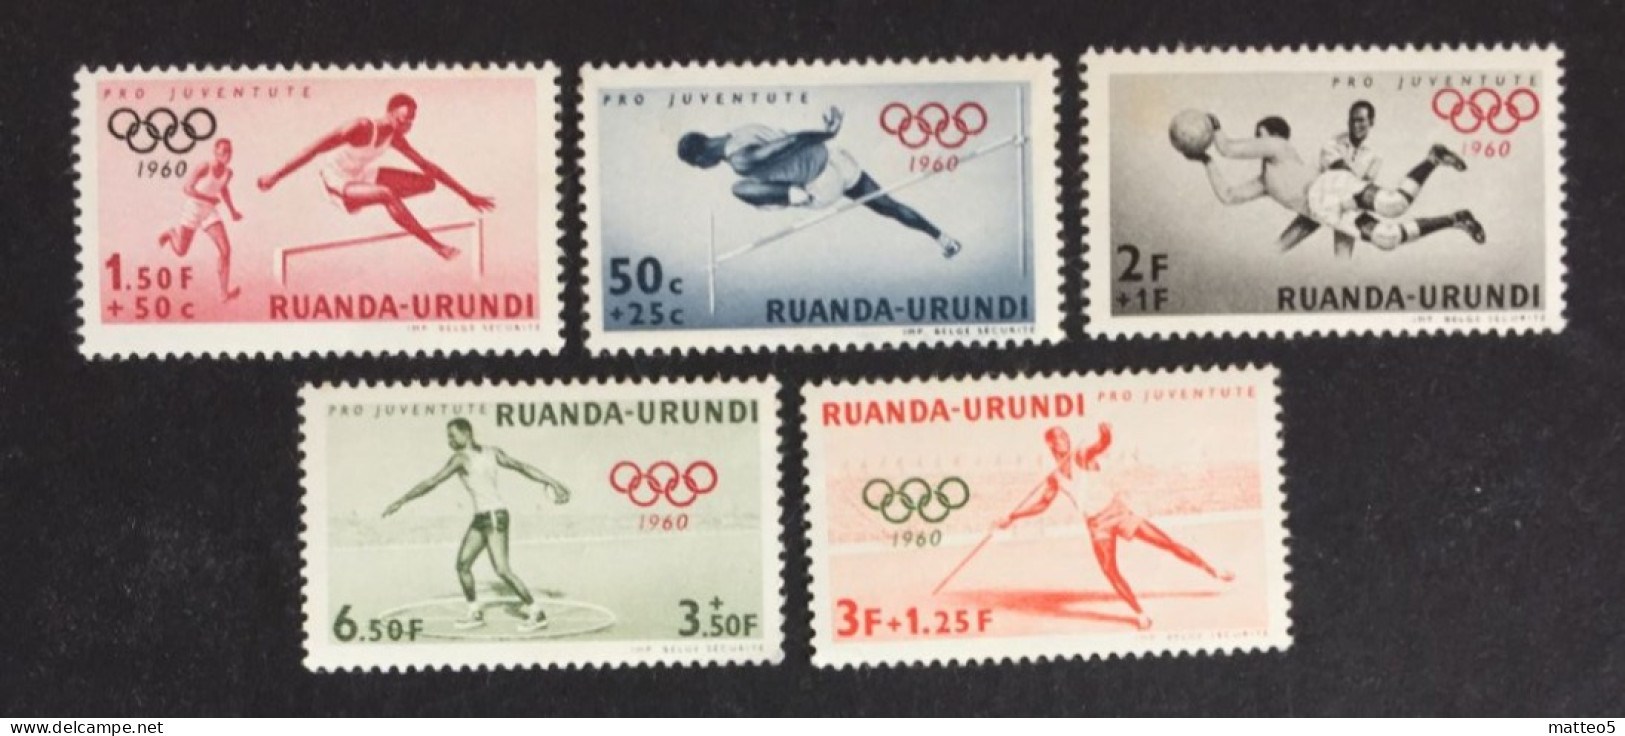 1960 - Rwanda Urundi - Summer Olympic Games 1960 - Rome - 5 Stamps Unused - Ongebruikt